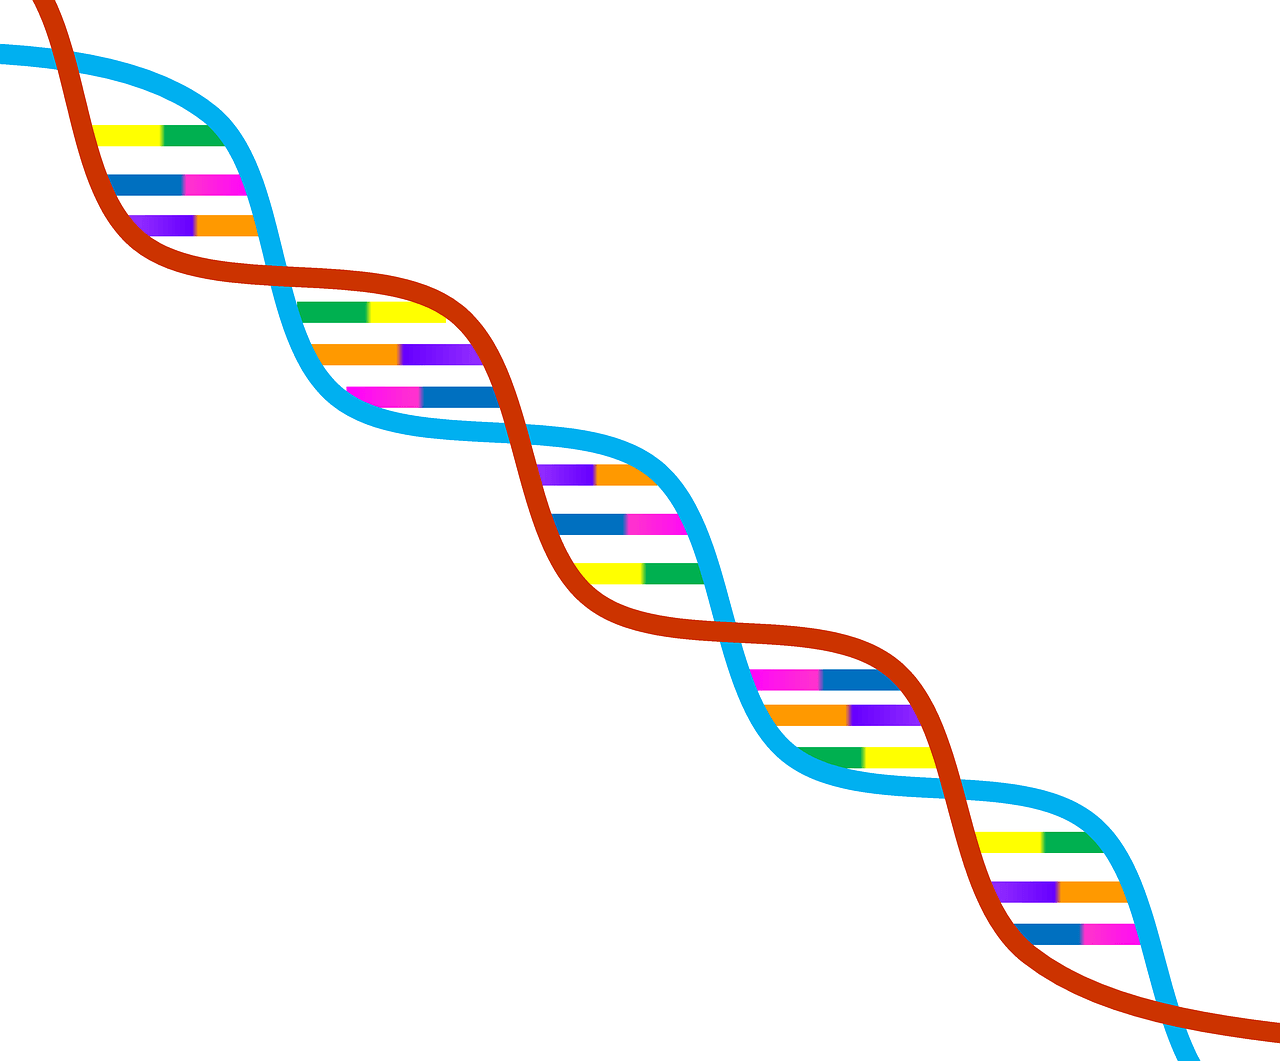 struktur dan replikasi DNA - Kelas 7 - Kuis